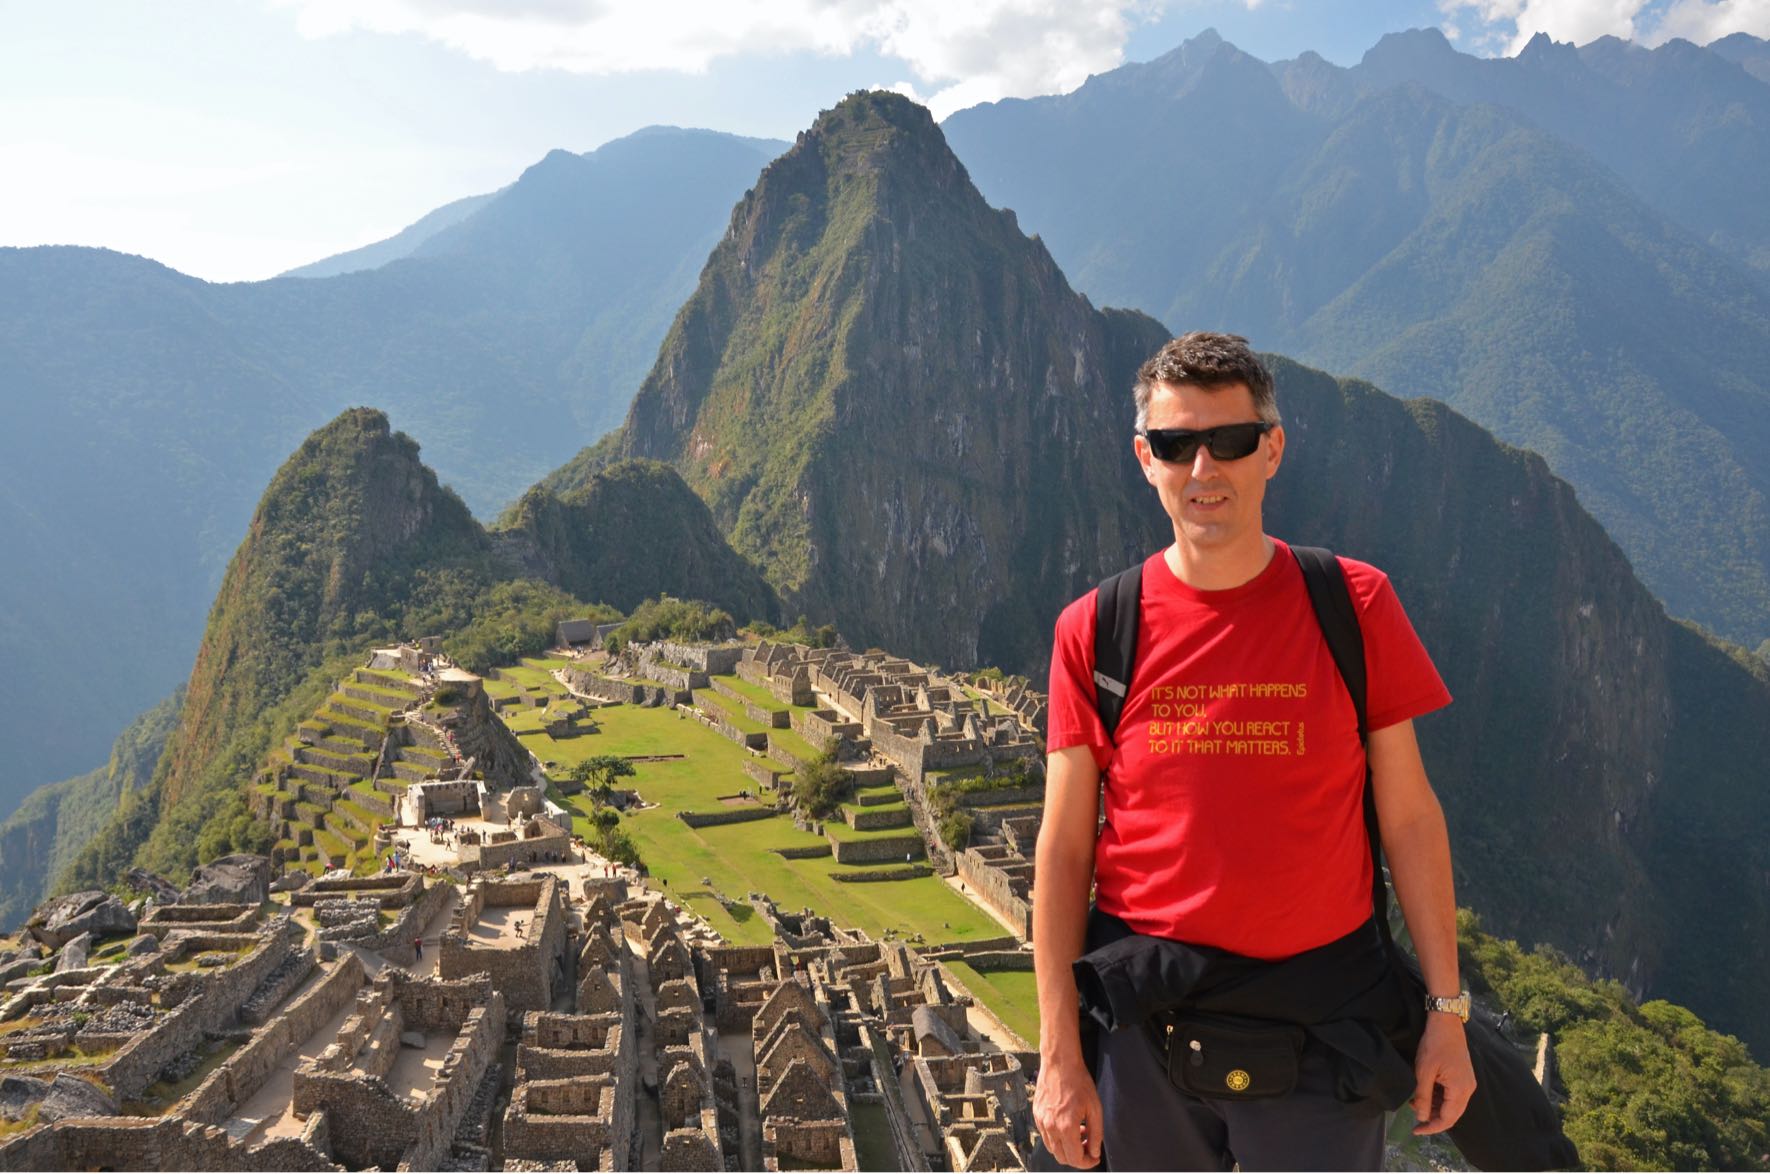 Auf diesem Bild steht Giancarlo mit Sonnebrille vor der Inka-Zitadelle von Machu Picchu, Peru.